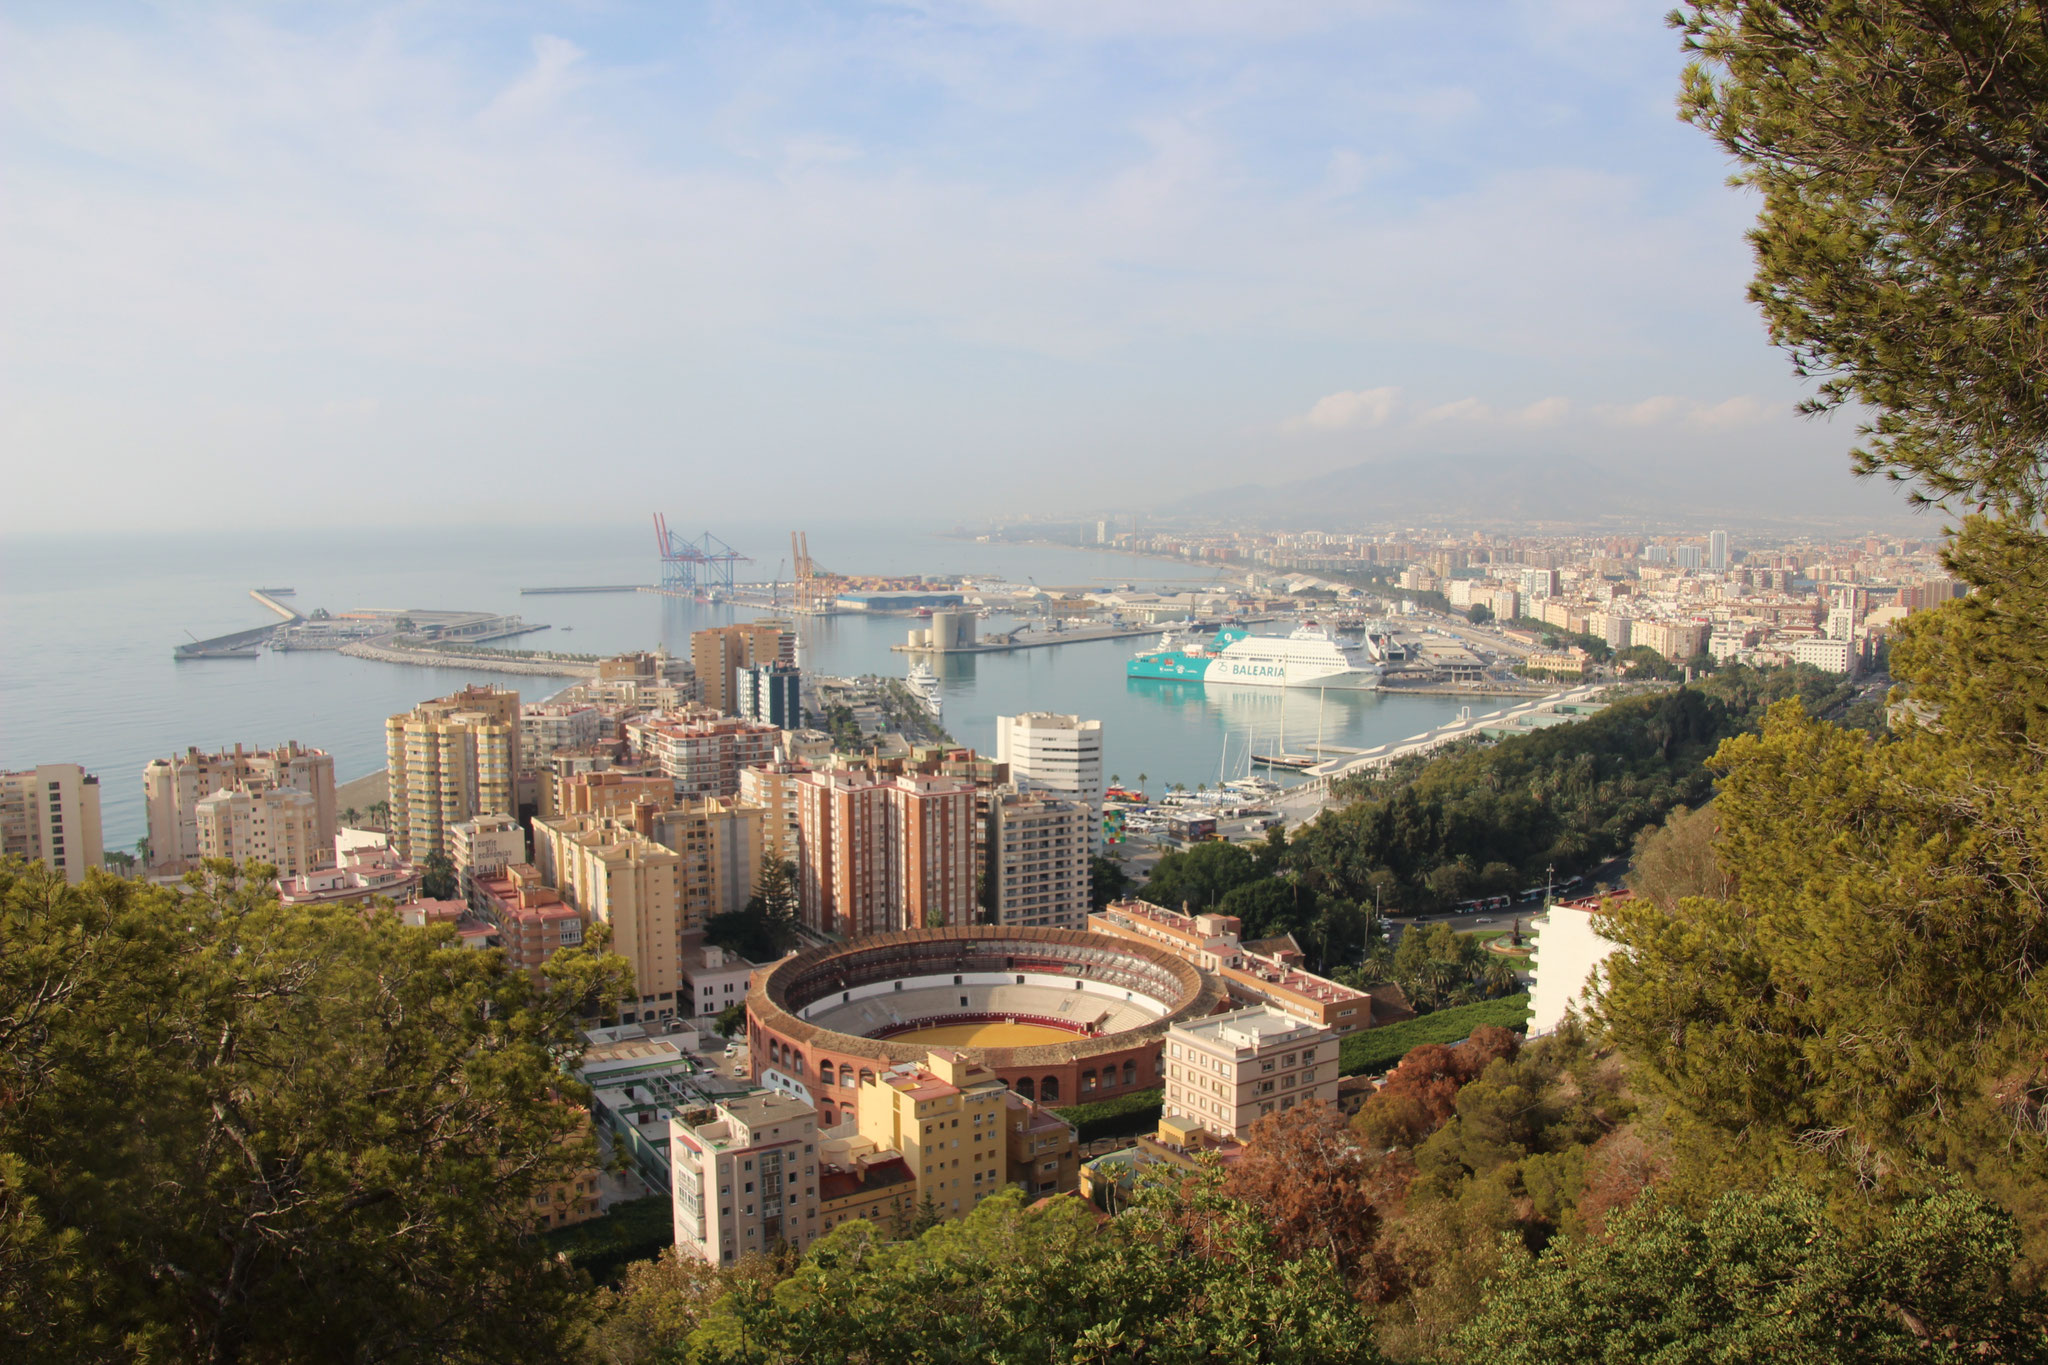 Blick auf Málaga, die zweitgrößte Stadt Andalusiens sowie sechstgröße Stadt Spaniens. Foto: Ulrike Schwerdtfeger